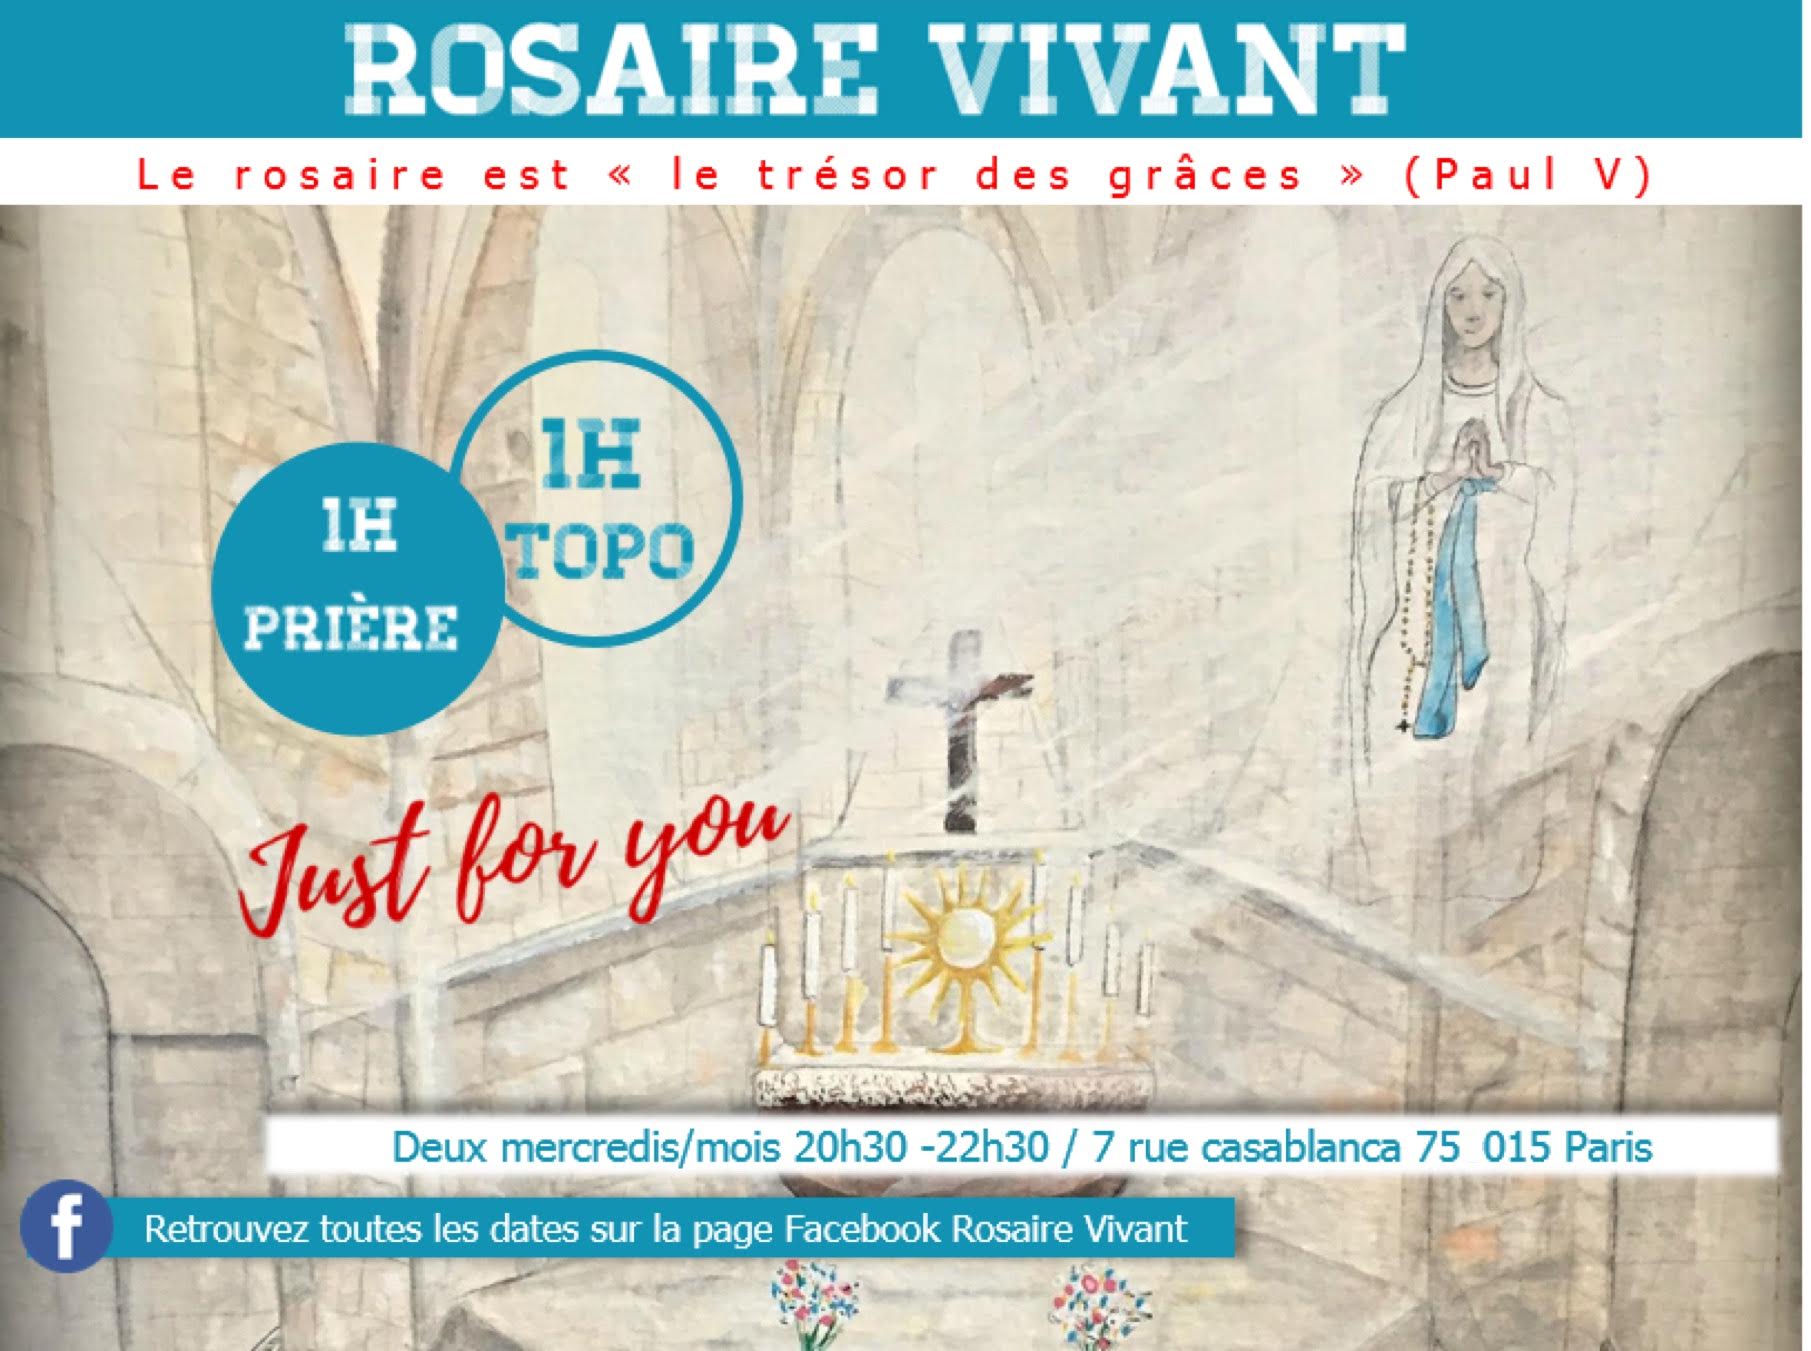 Prochaine rencontre du Rosaire Vivant le 13 décembre à Paris, avec comme invité Etienne Villemain, fondateur de l’association Lazare